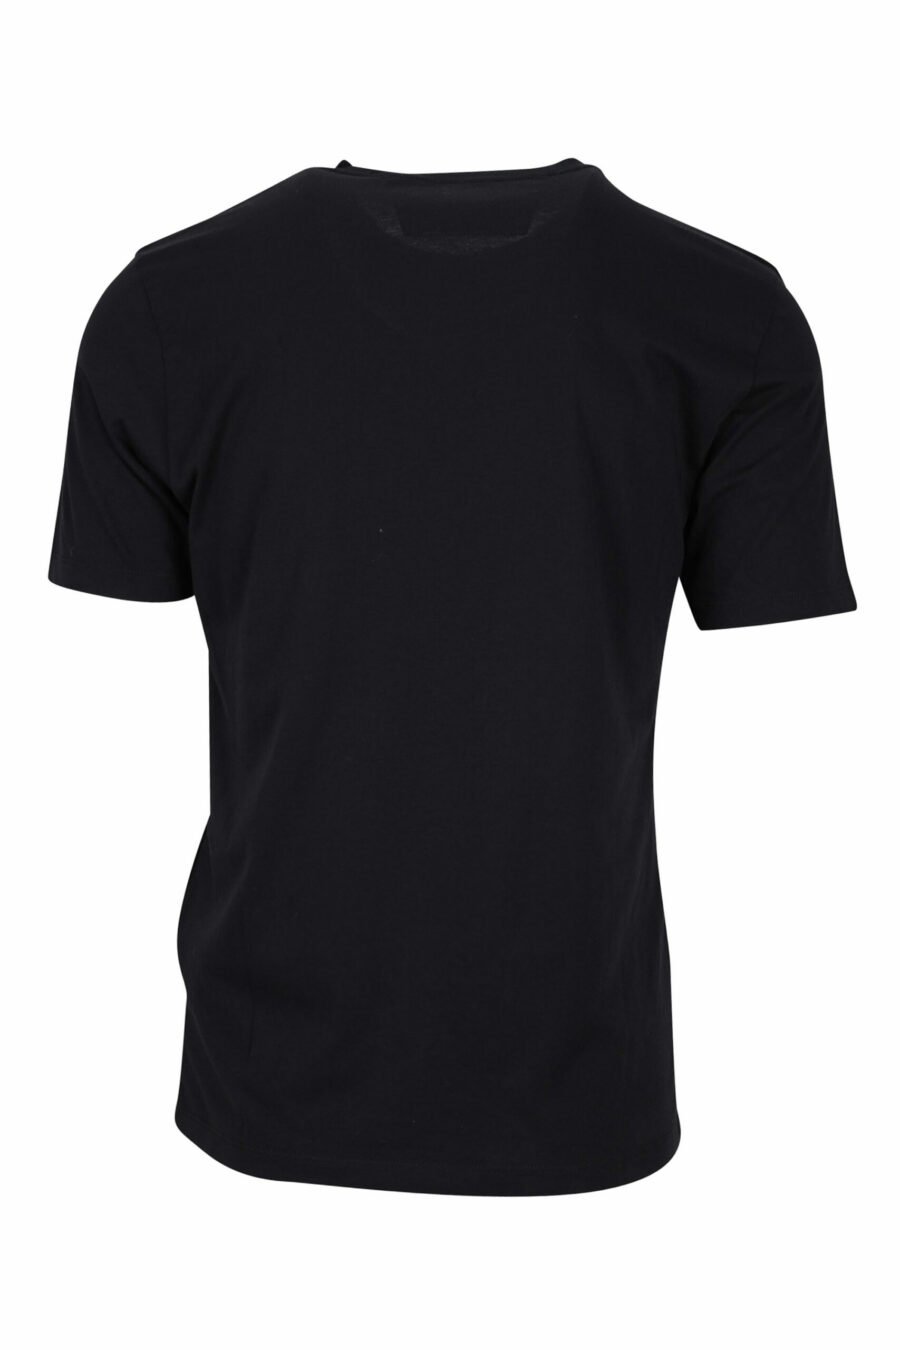 Schwarzes T-Shirt mit grafischem Maxilogo - 7620943572964 1 skaliert